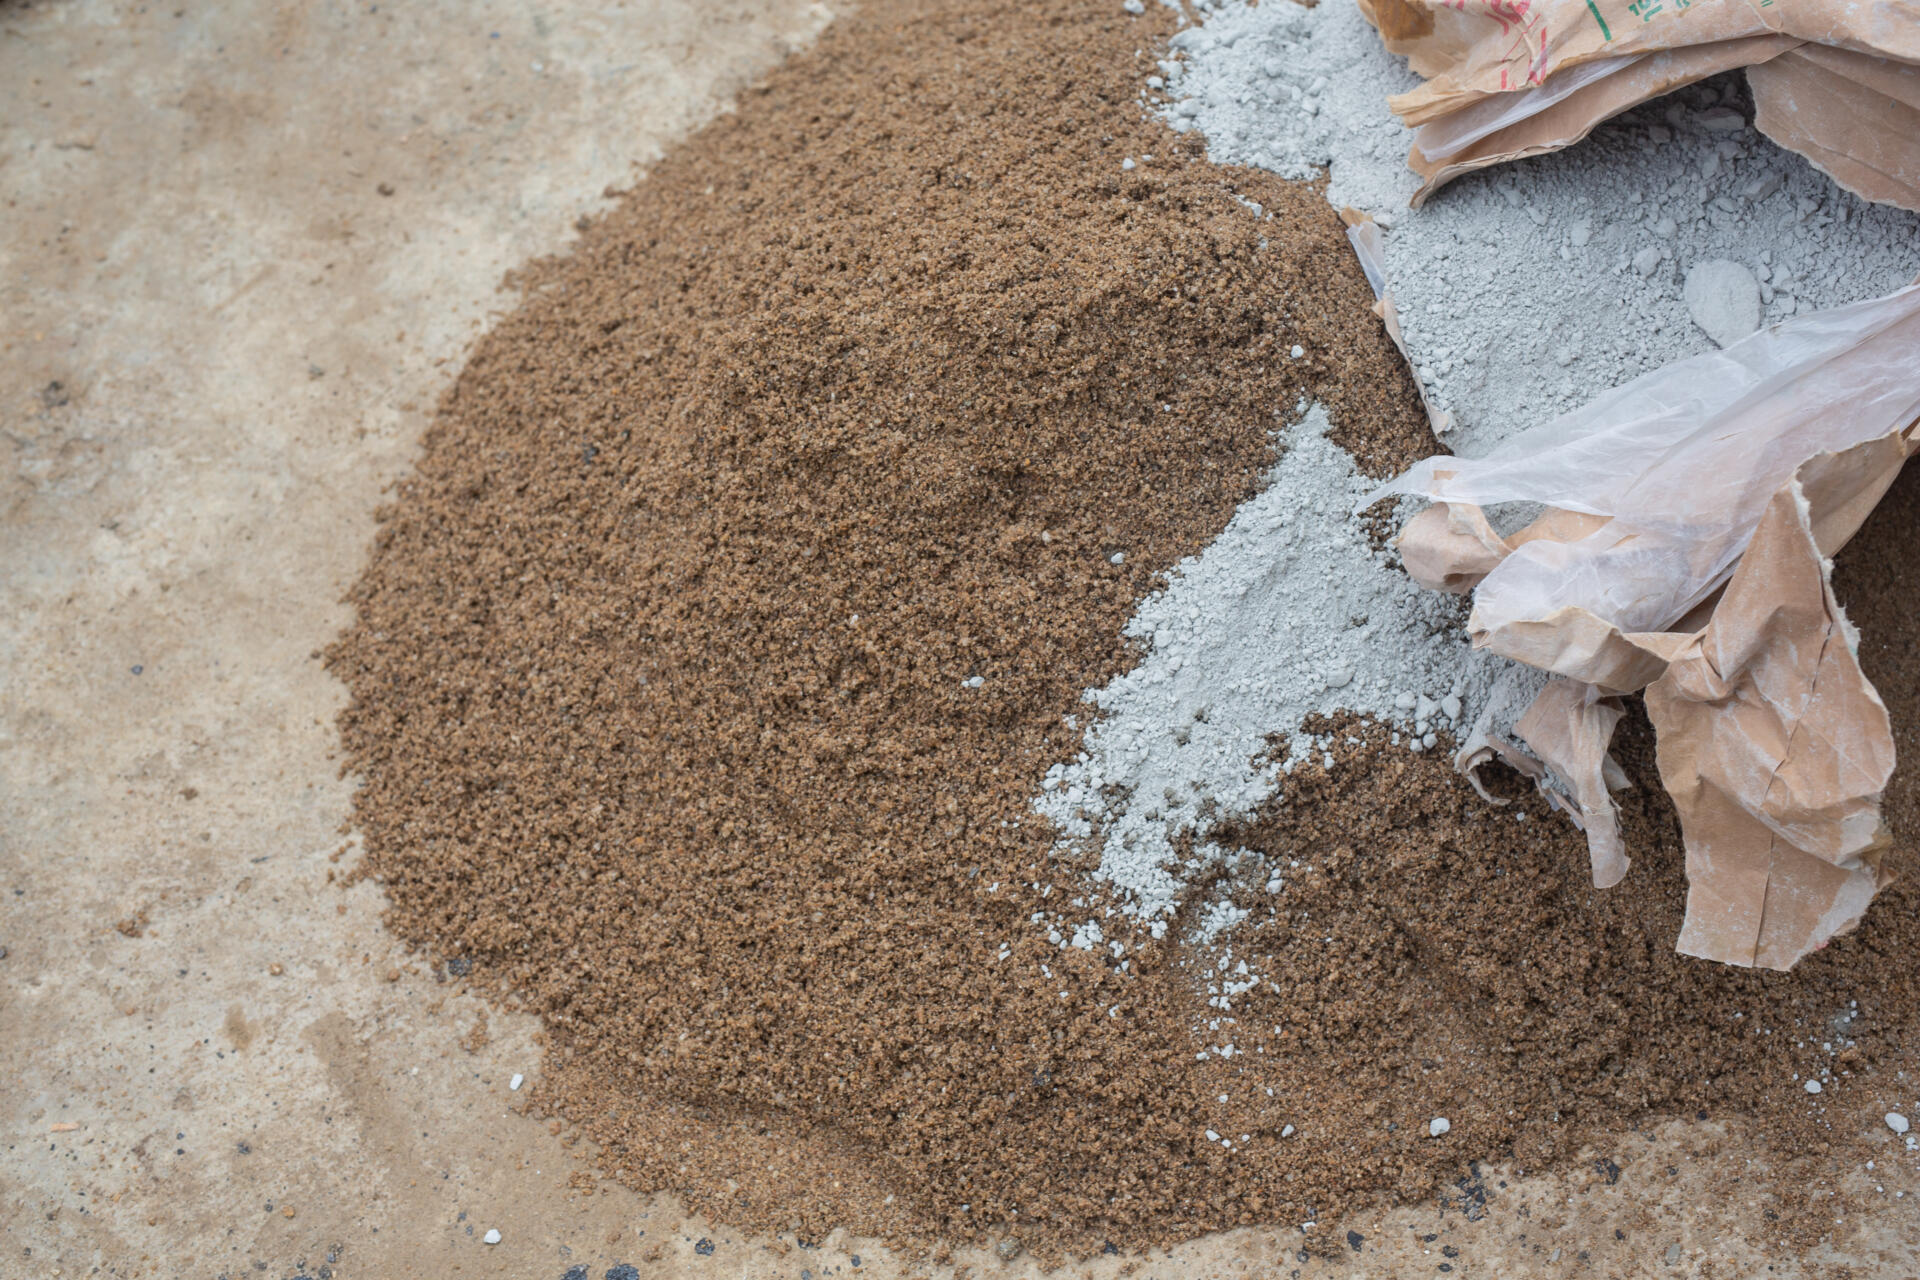 Asche als alternativer Zuschlagstoff für Zement. Bild: jcomp on Freepik